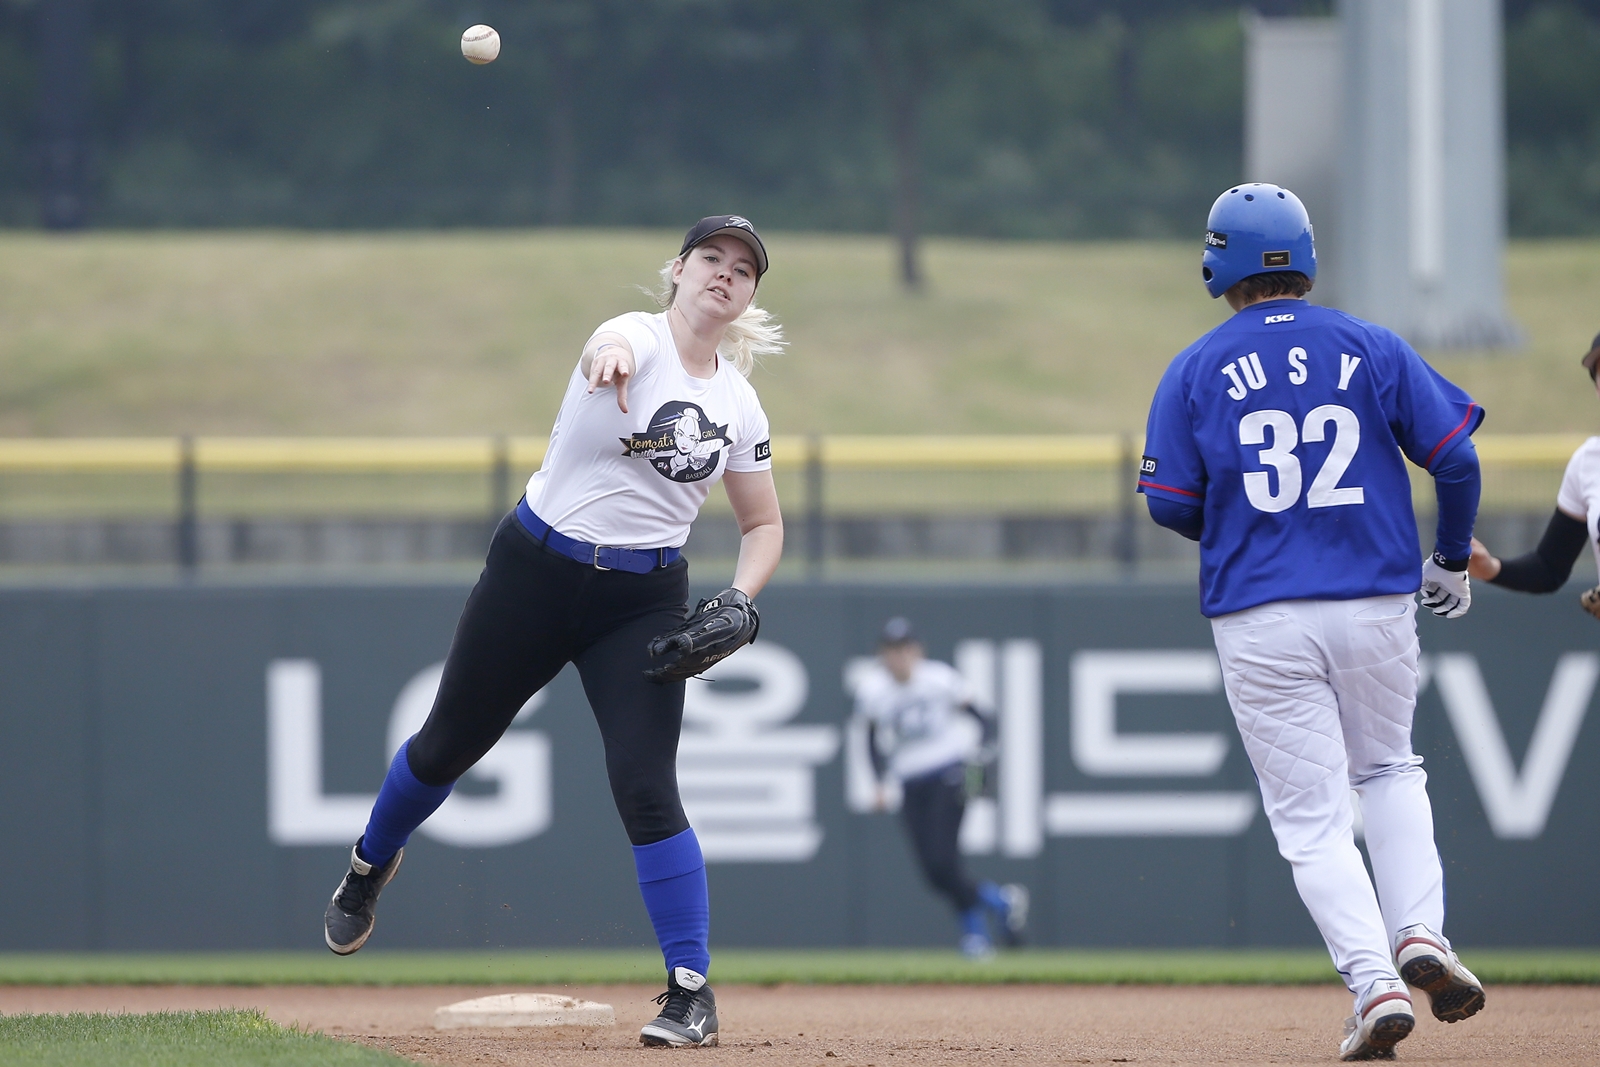 LG전자와 한국여자야구연맹이 공동 주최한 ‘제4회 LG컵 국제여자야구대회’가 26일 성황리에 막을 내렸다. 이번 대회는 일본팀이 우승을 차지했다. 사진은 한국팀(KOREA팀)과 유럽팀이 경기하는 모습